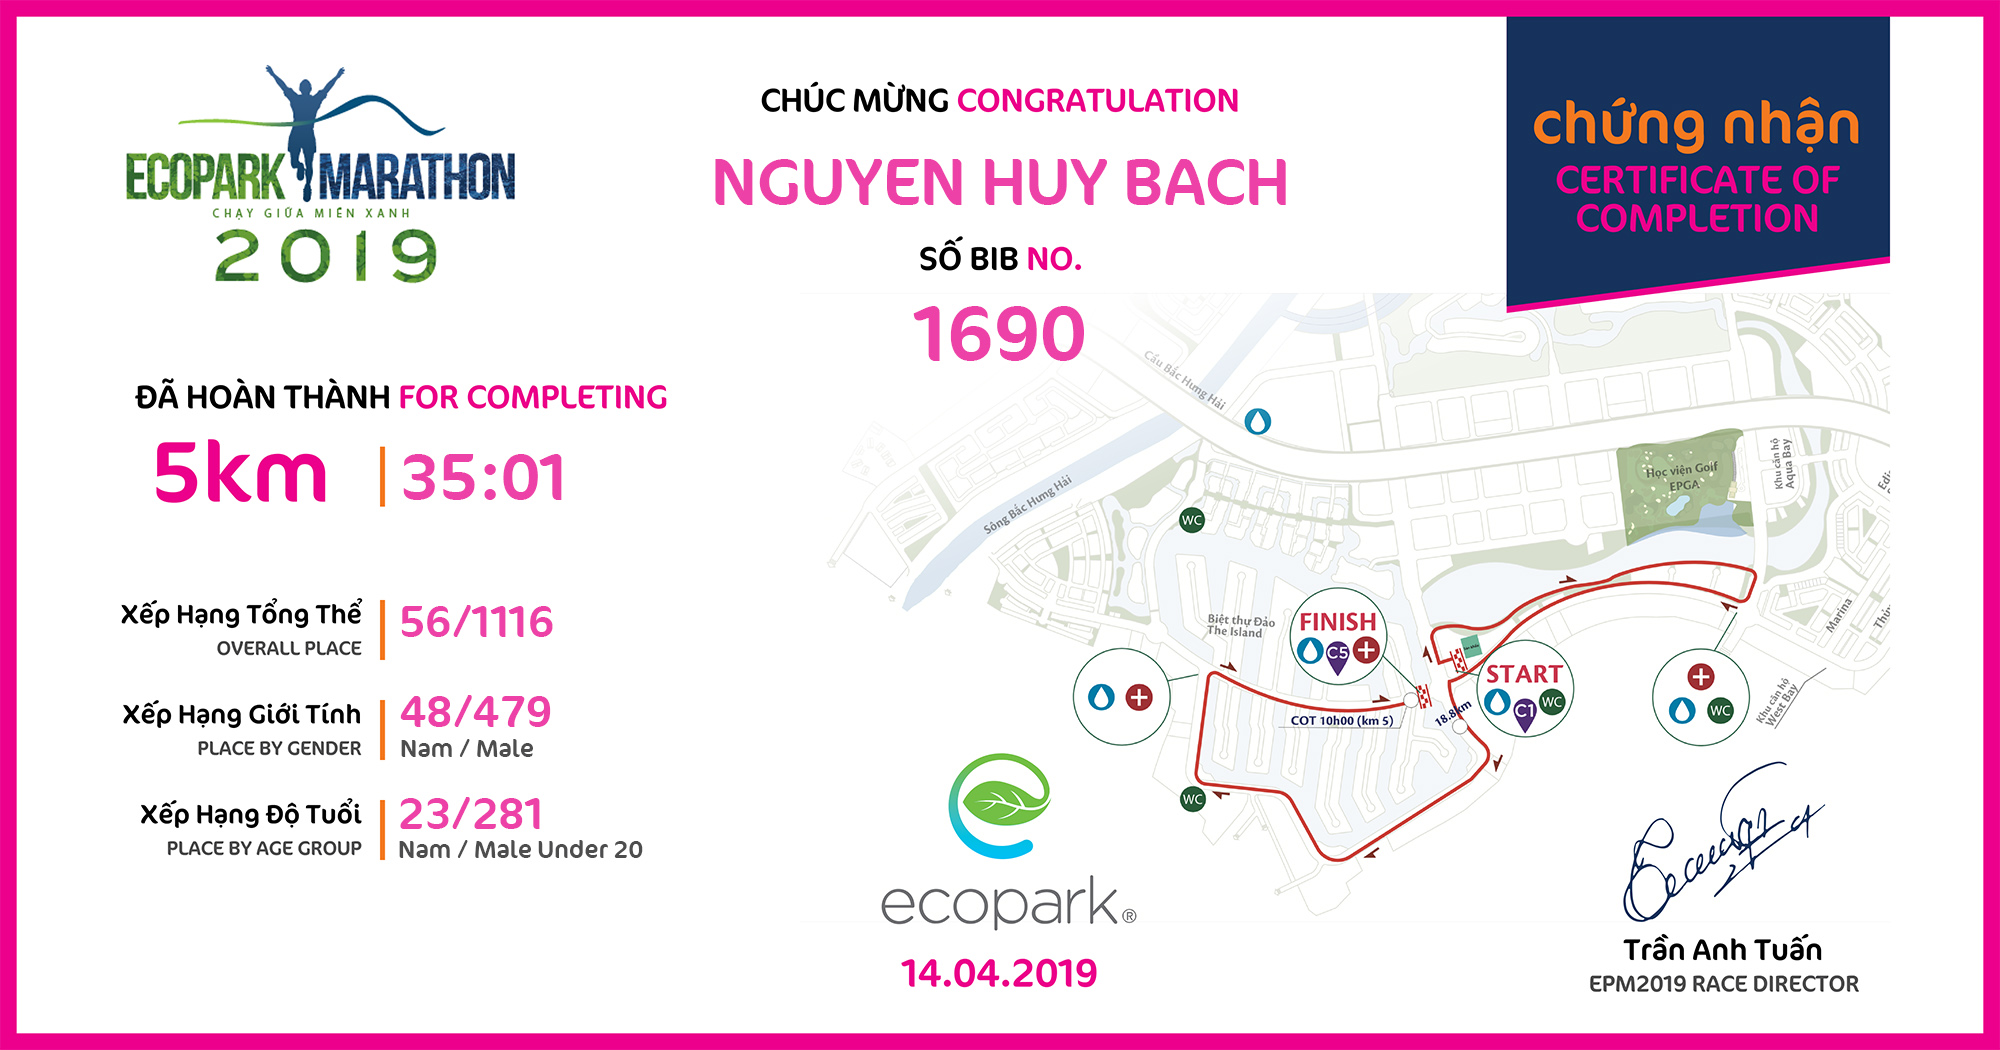 1690 - Nguyen Huy Bach